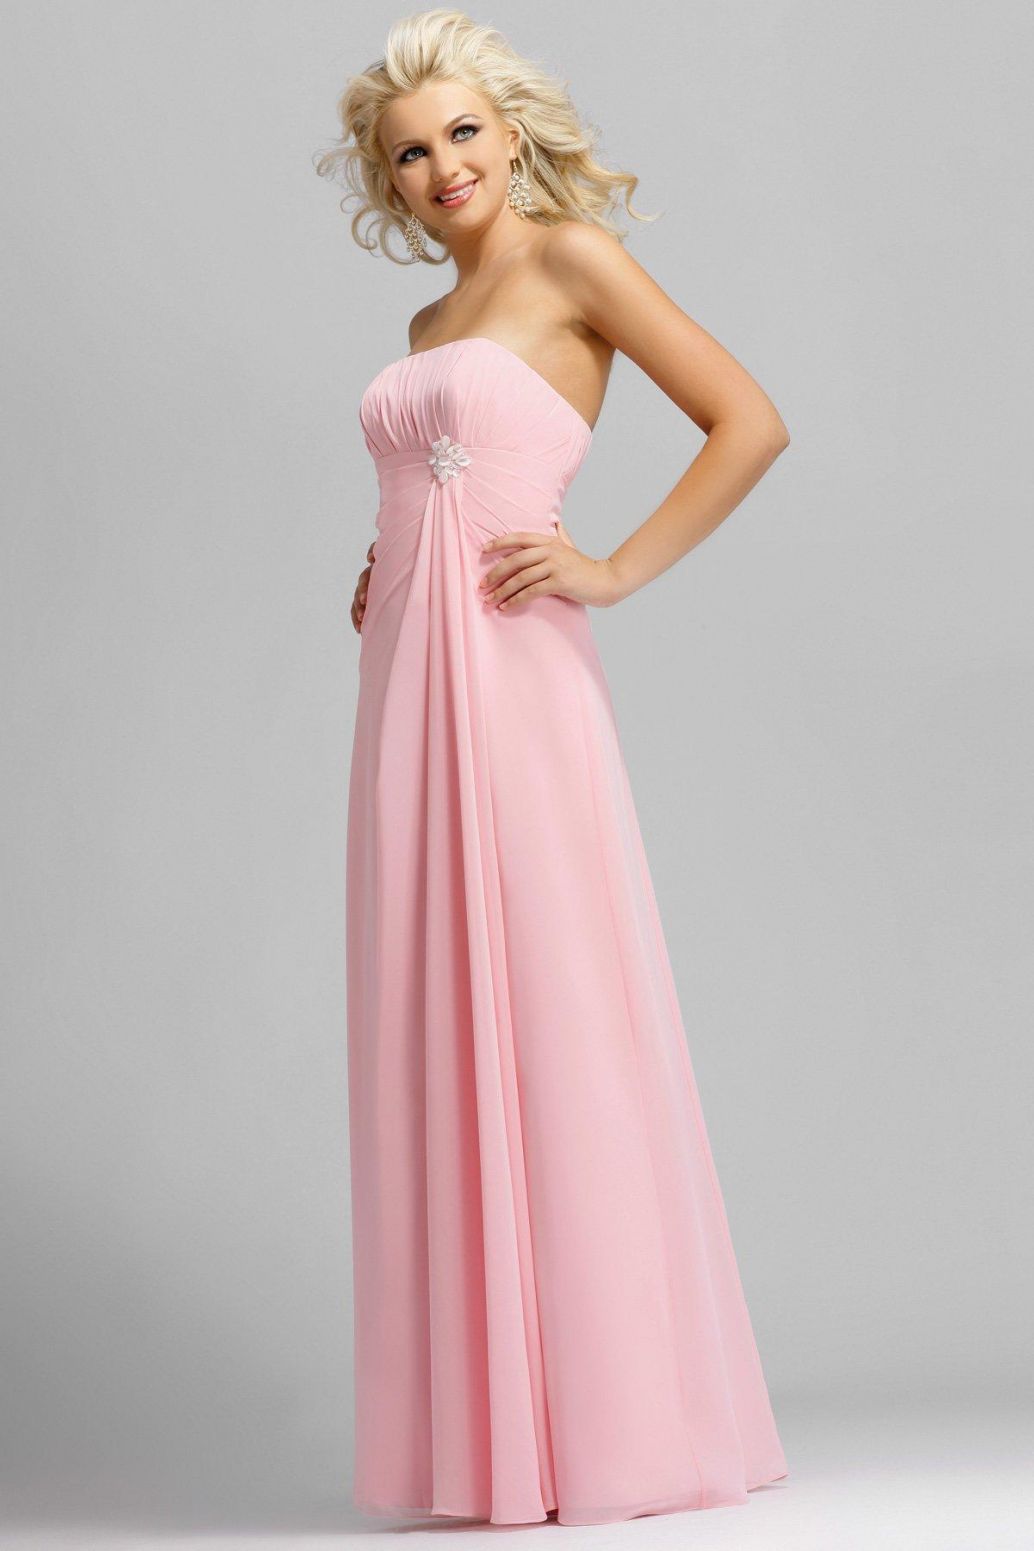 Pink bridesmaid dresses long